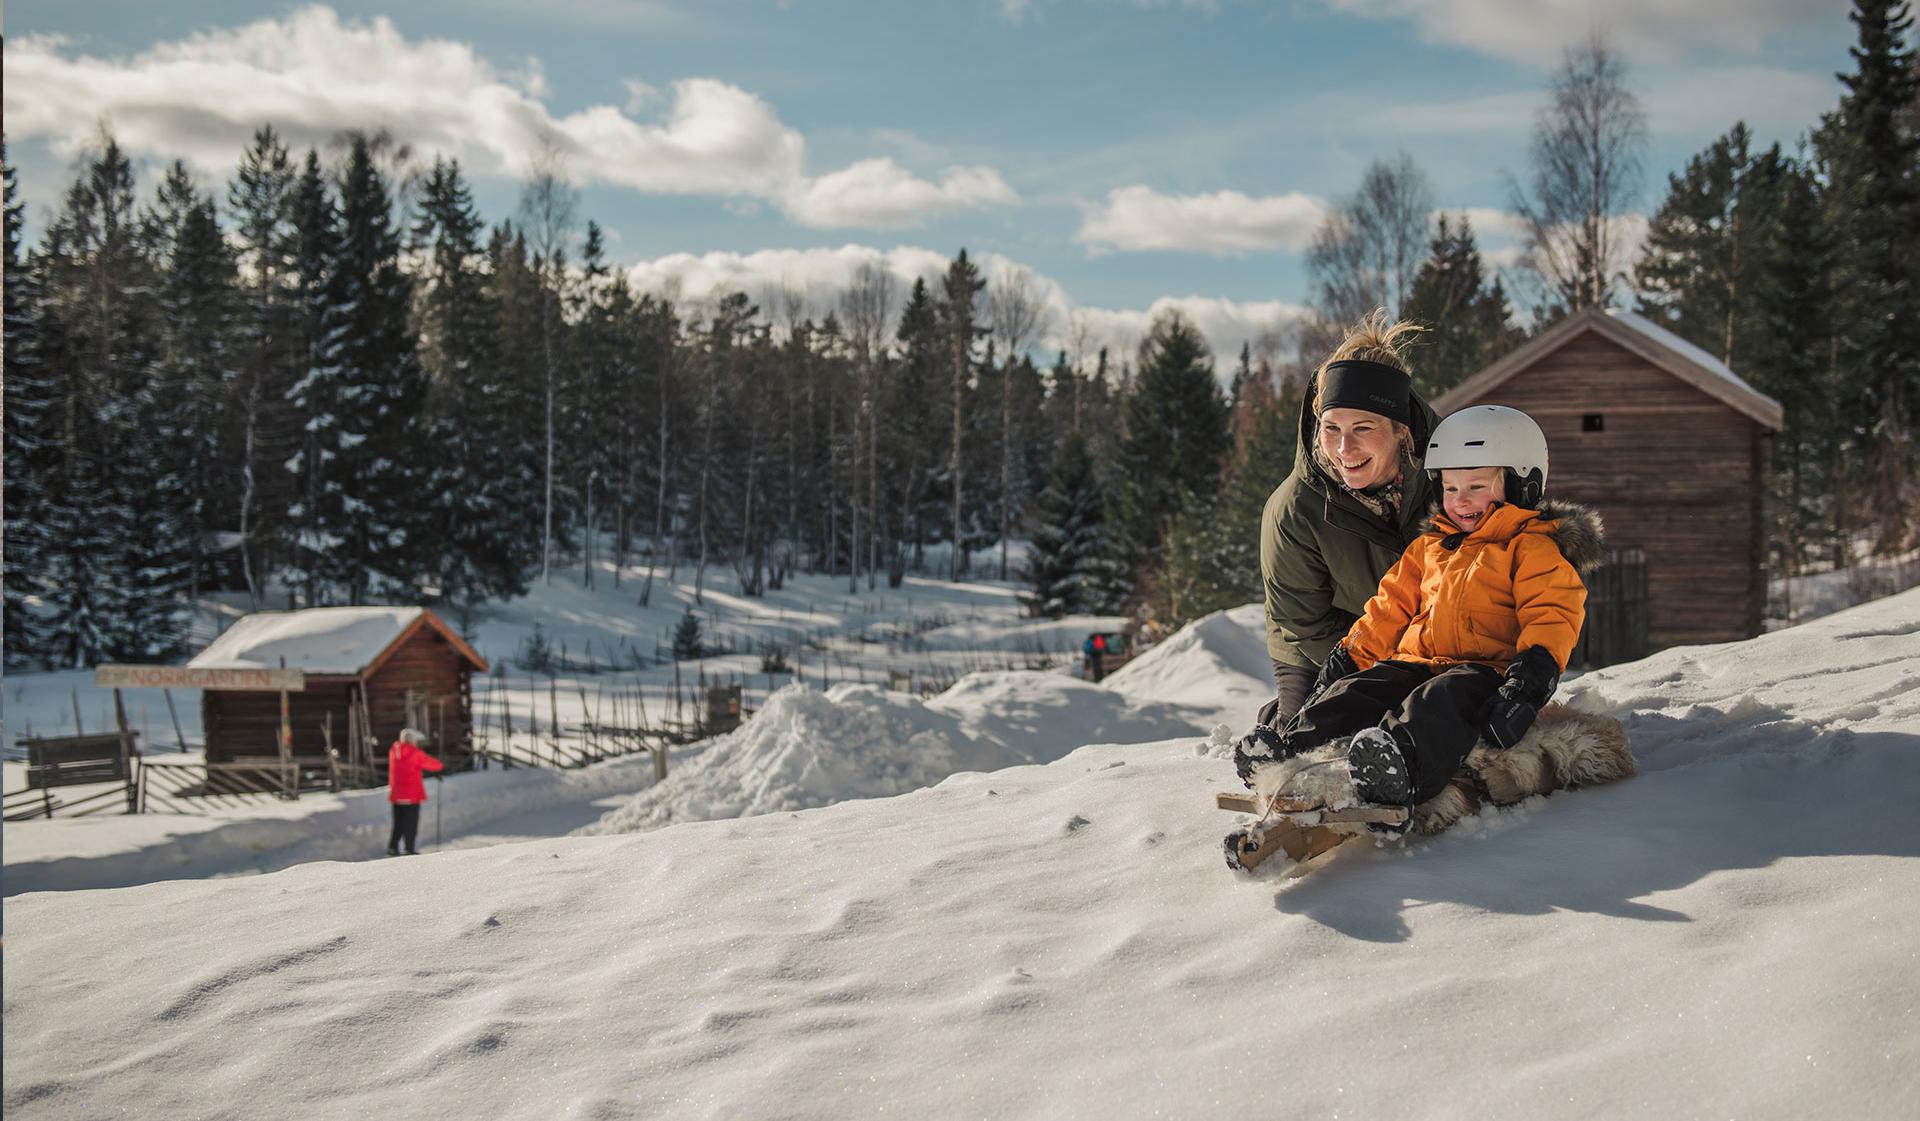 Fotografi av en vuxen person och ett barn i en pulkabacke på Norra Berget. Barnet sitter på en släde och har hjälm på sig och den vuxna personen sitter bredvid.